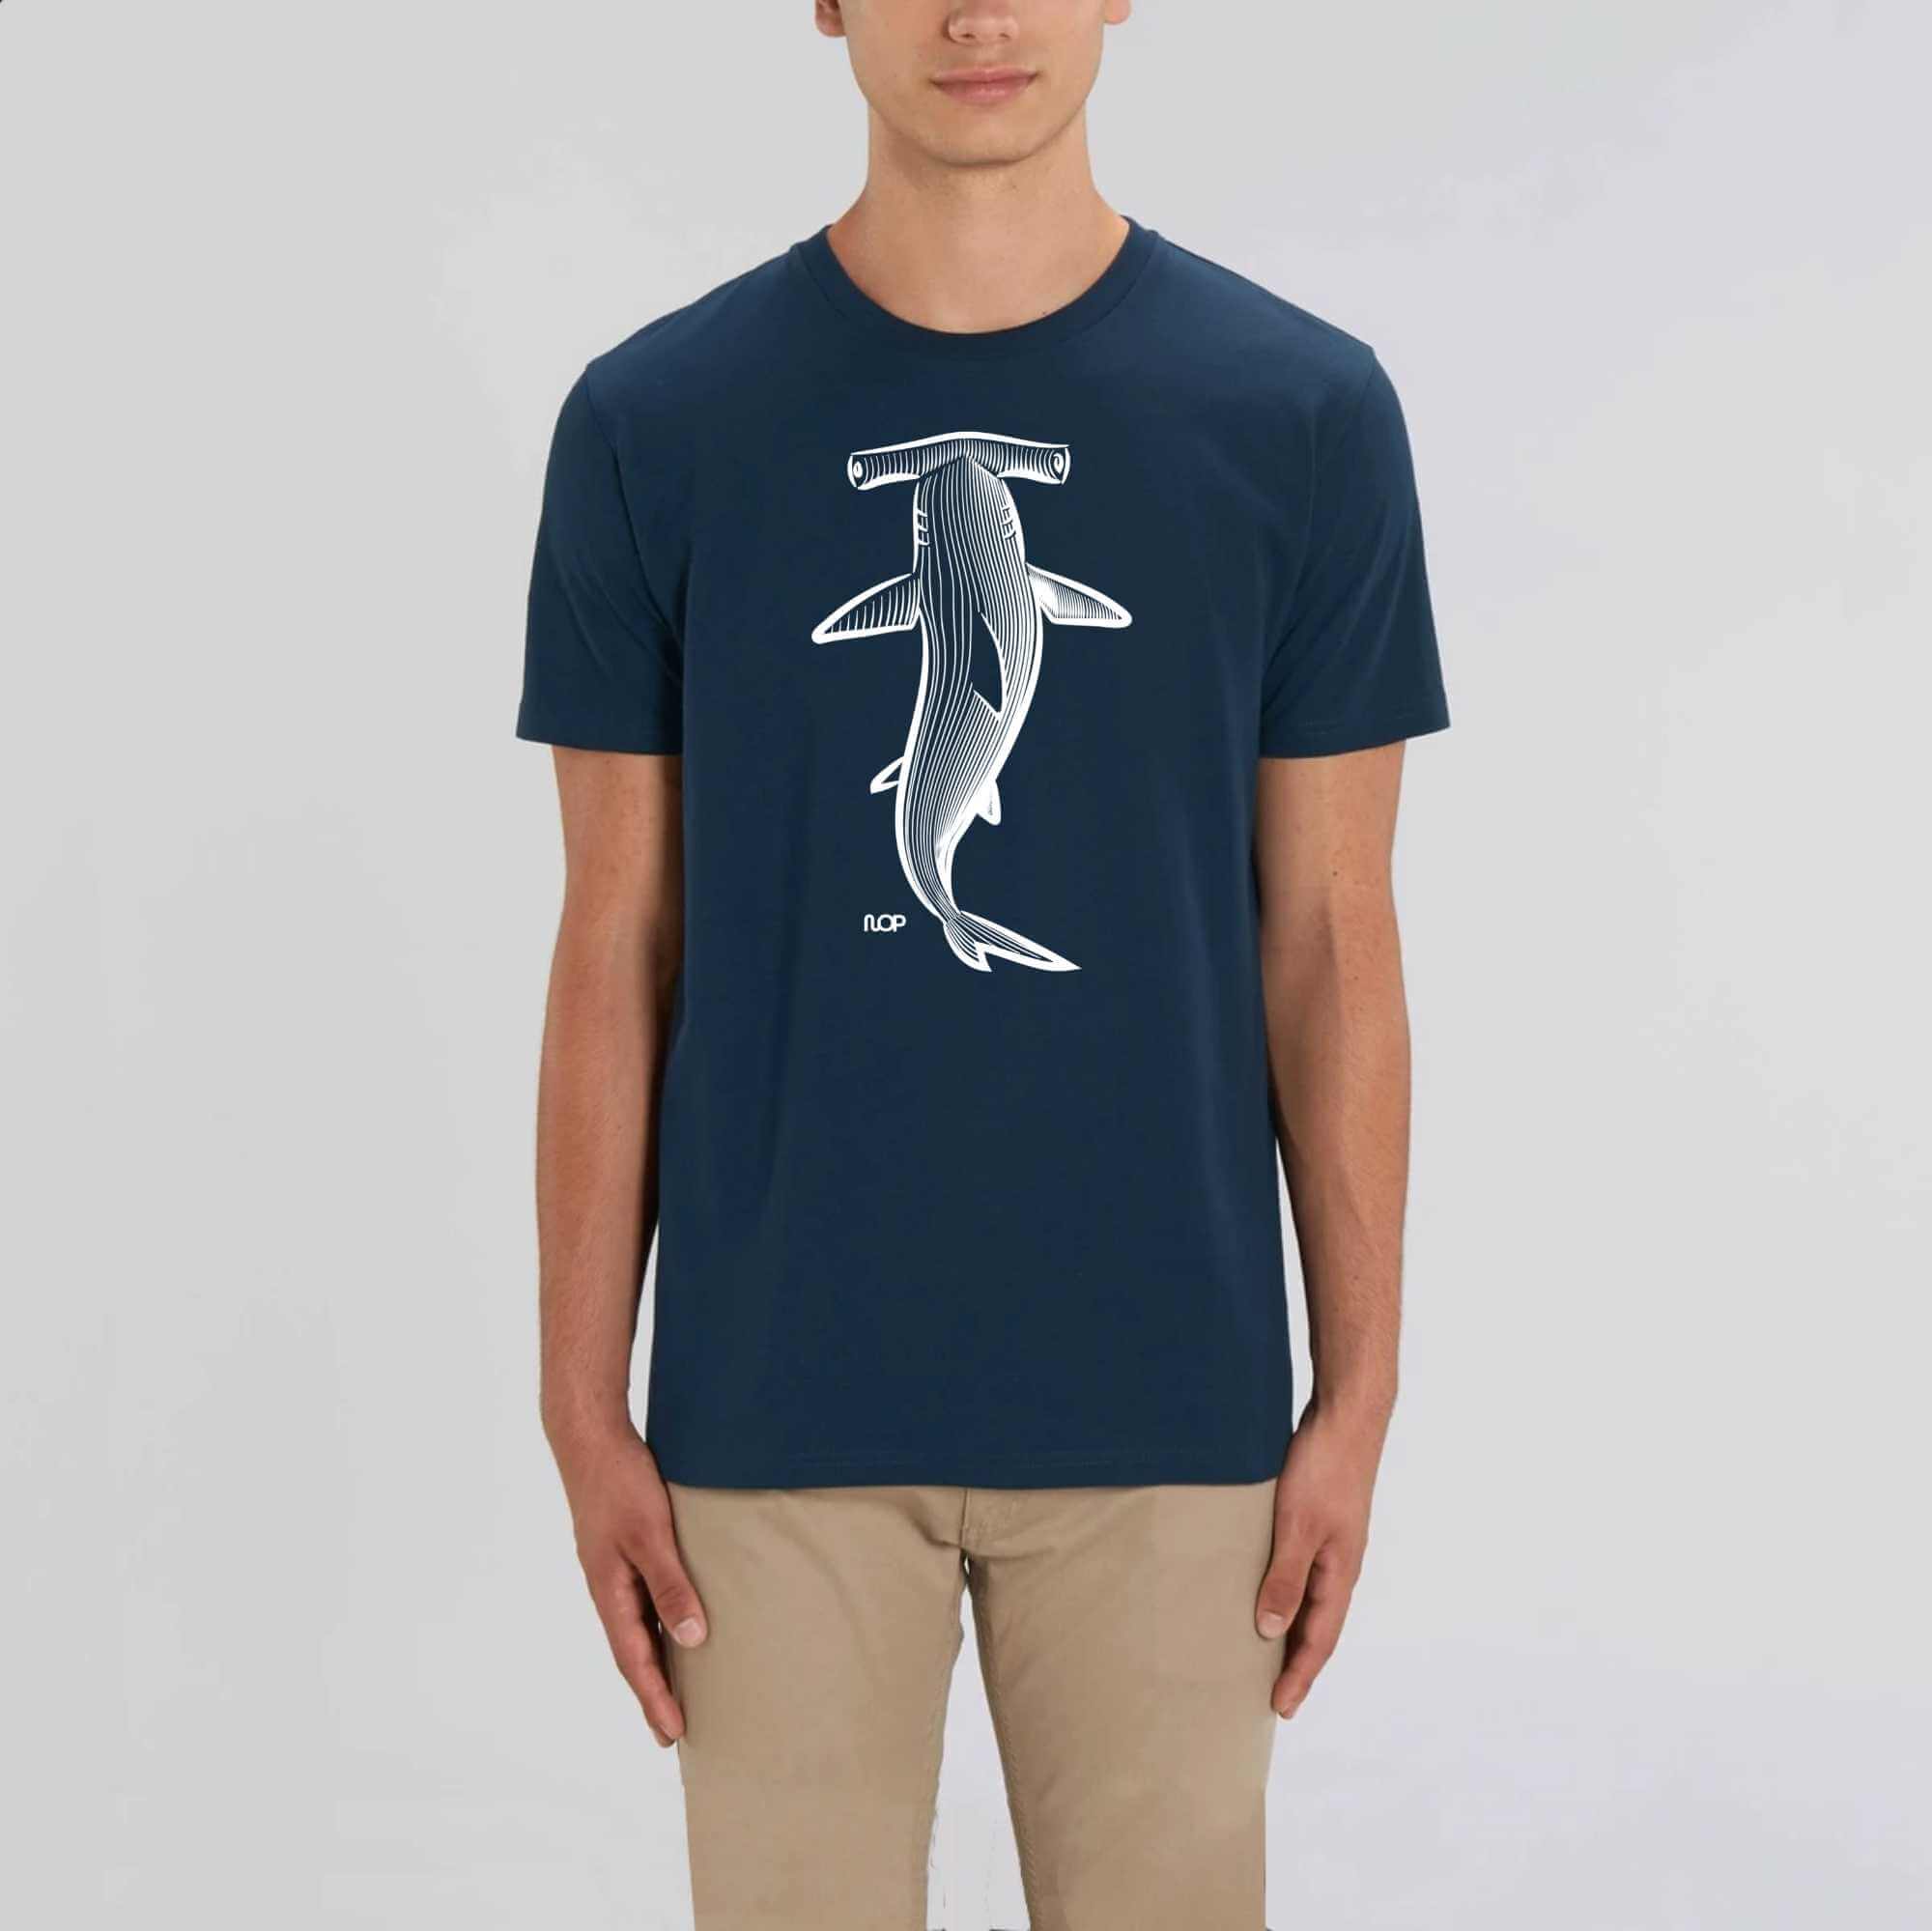 NOP Hammerhead Shark T-shirt